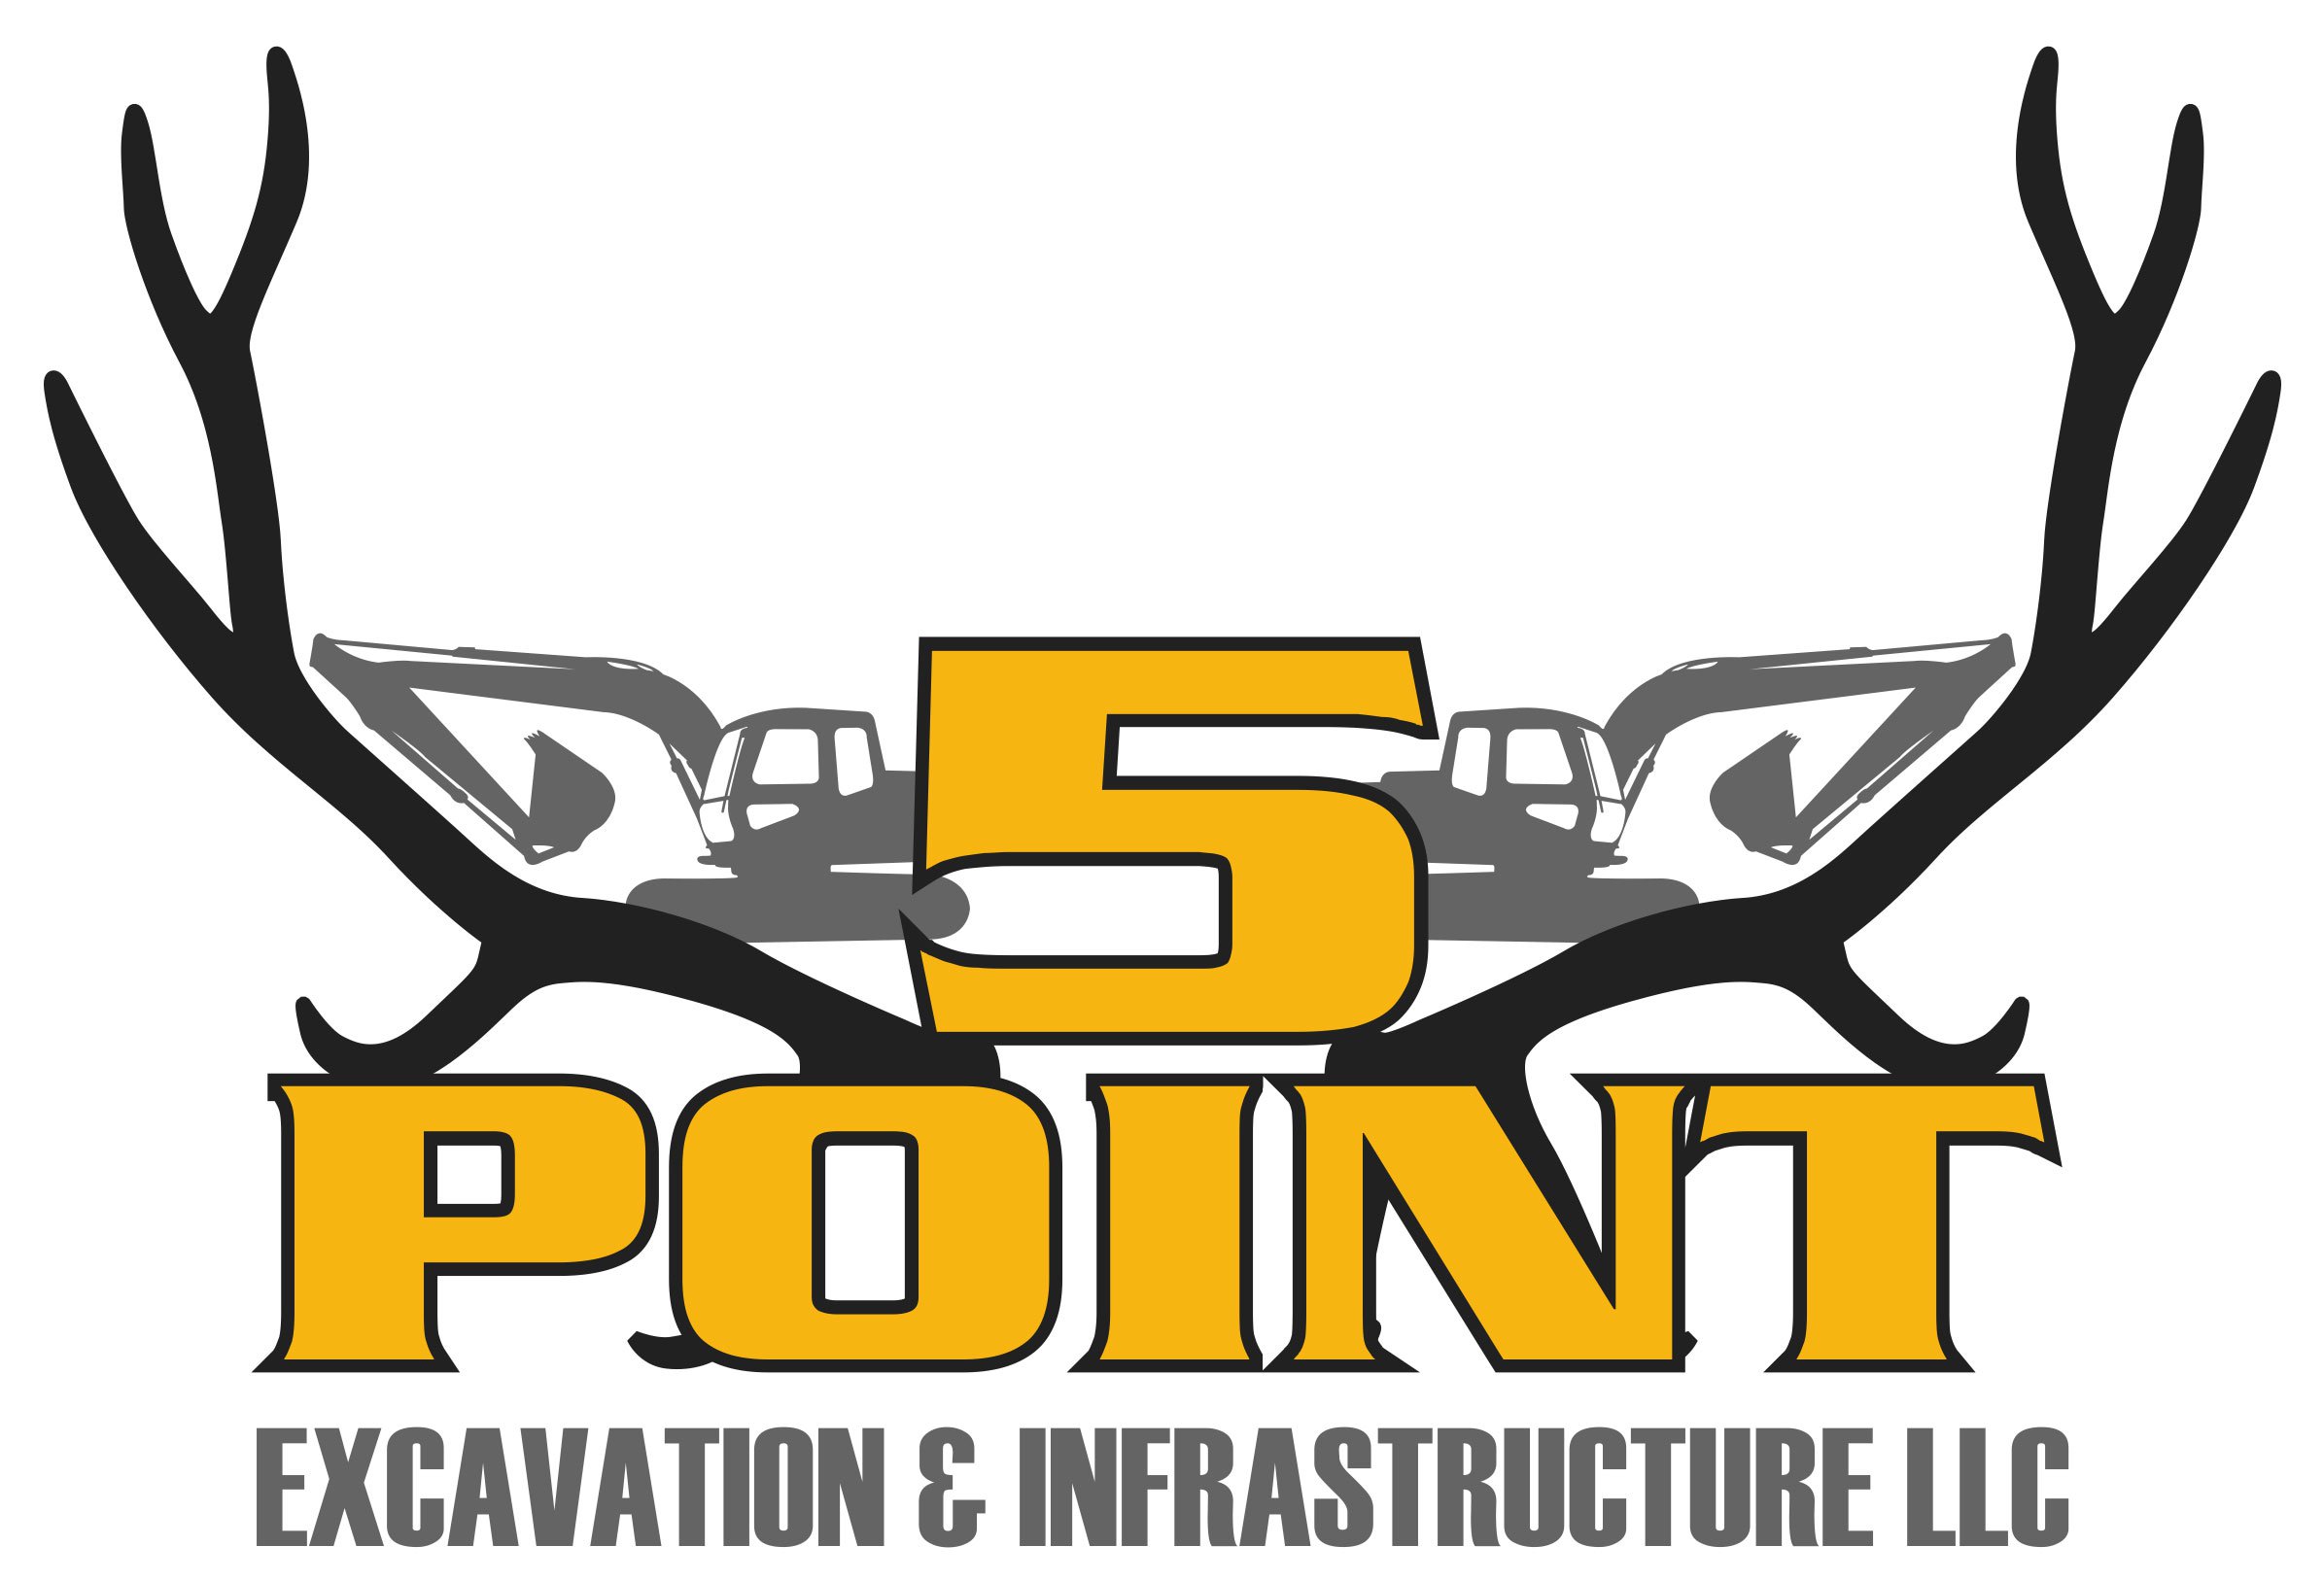 5 Point Excavation & Infrastructure LLC